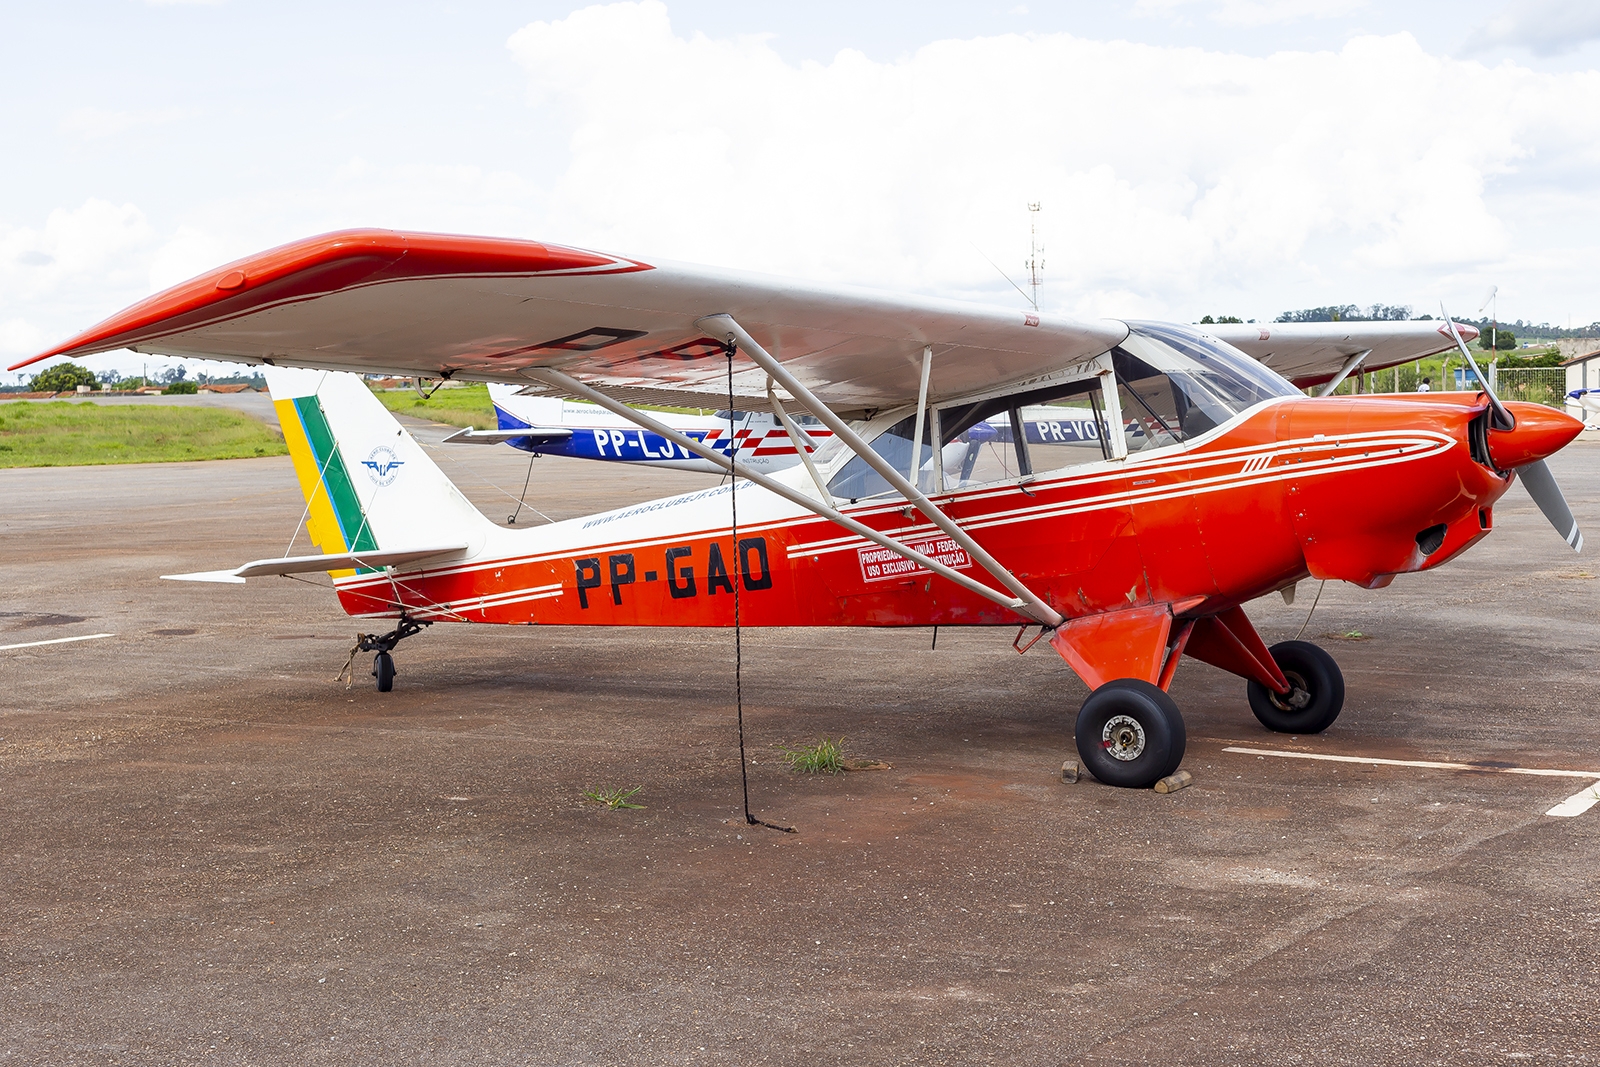 PP-GAO - Aero Boero AB-180